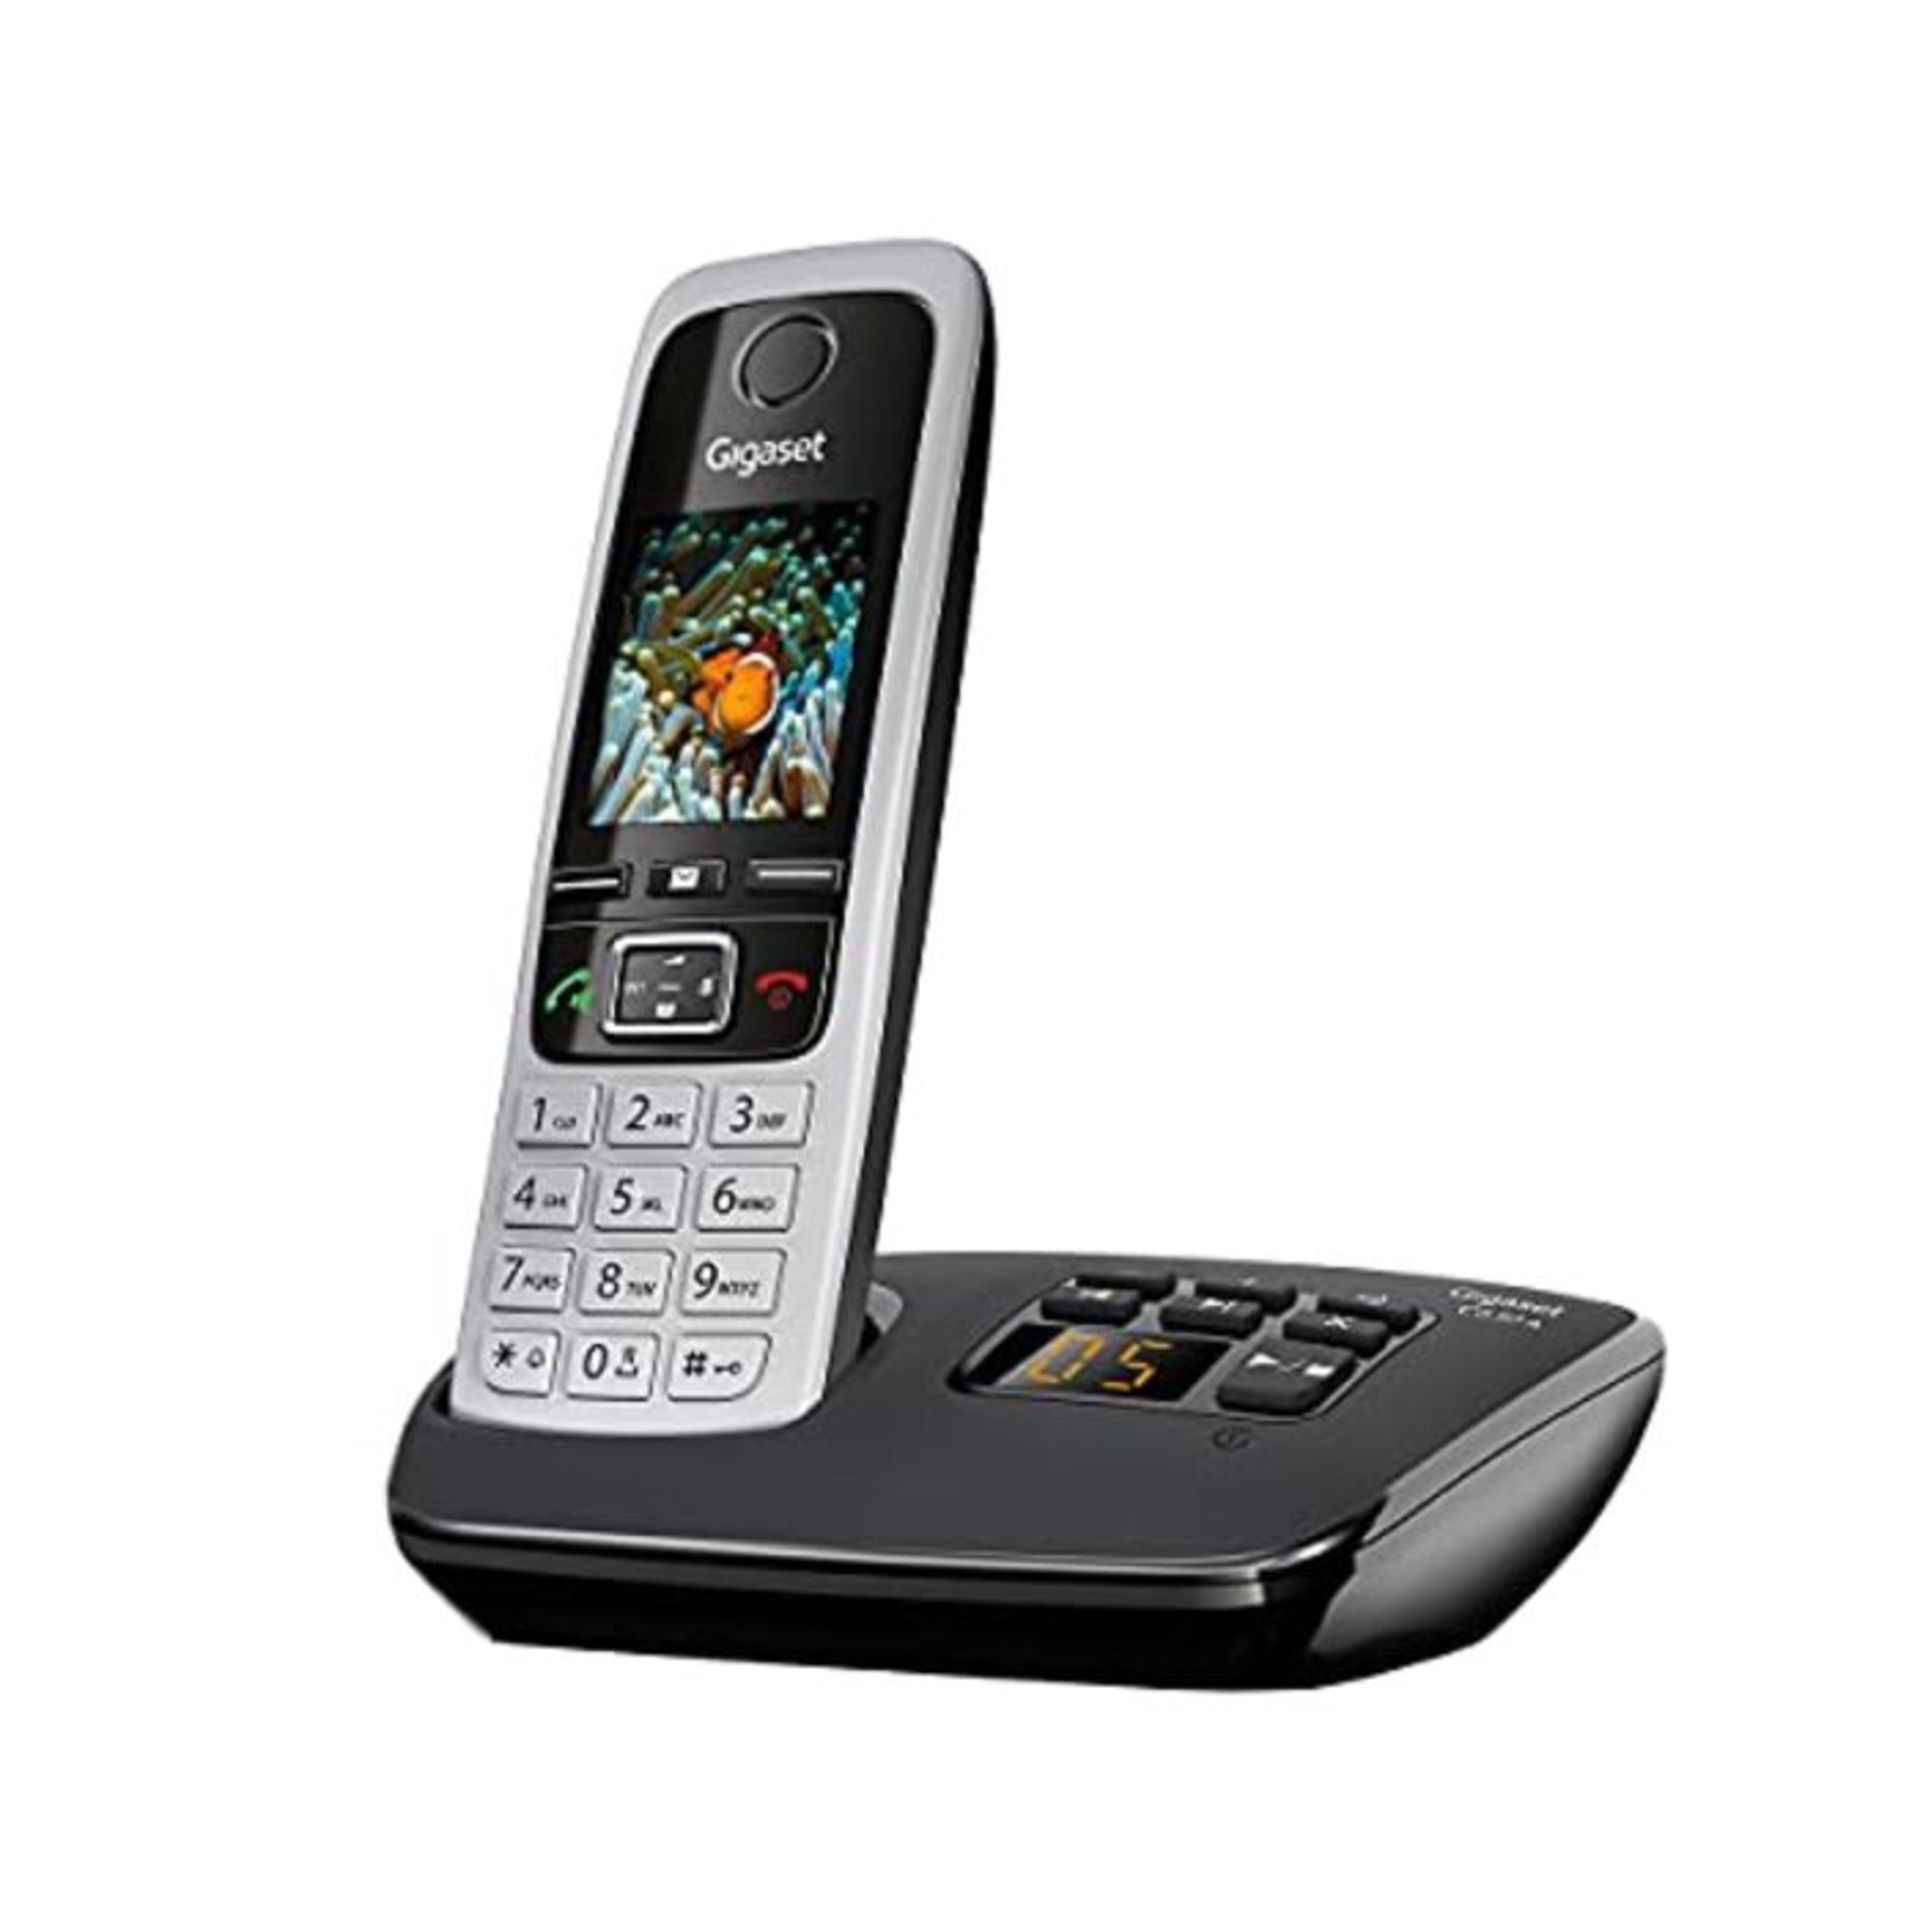 G�i�g�a�s�e�t� �C�6�3�0�A� �S�I�N�G�L�E� �-� �P�r�e�m�i�u�m� �C�o�r�d�l�e�s�s� �H�o�m�e� �P�h�o�n�e�